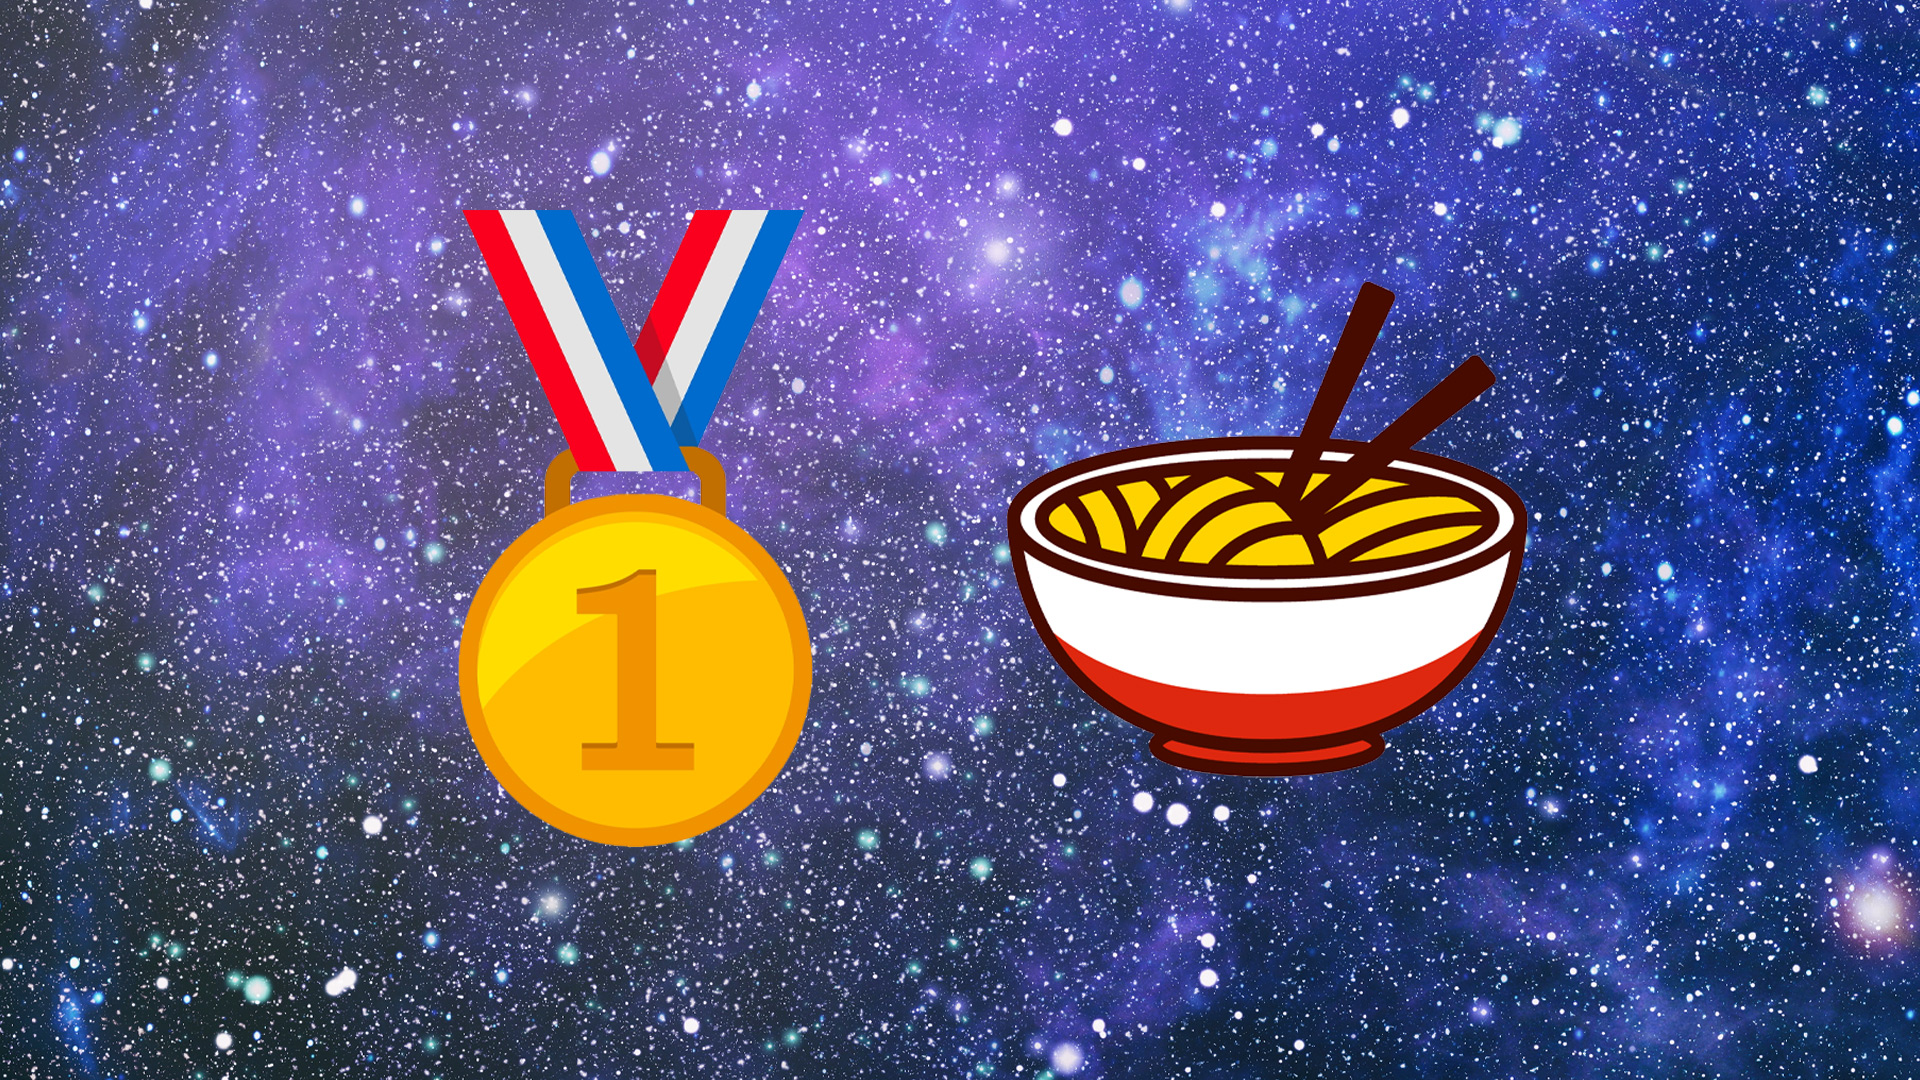 Golden medal and bowl of noodles